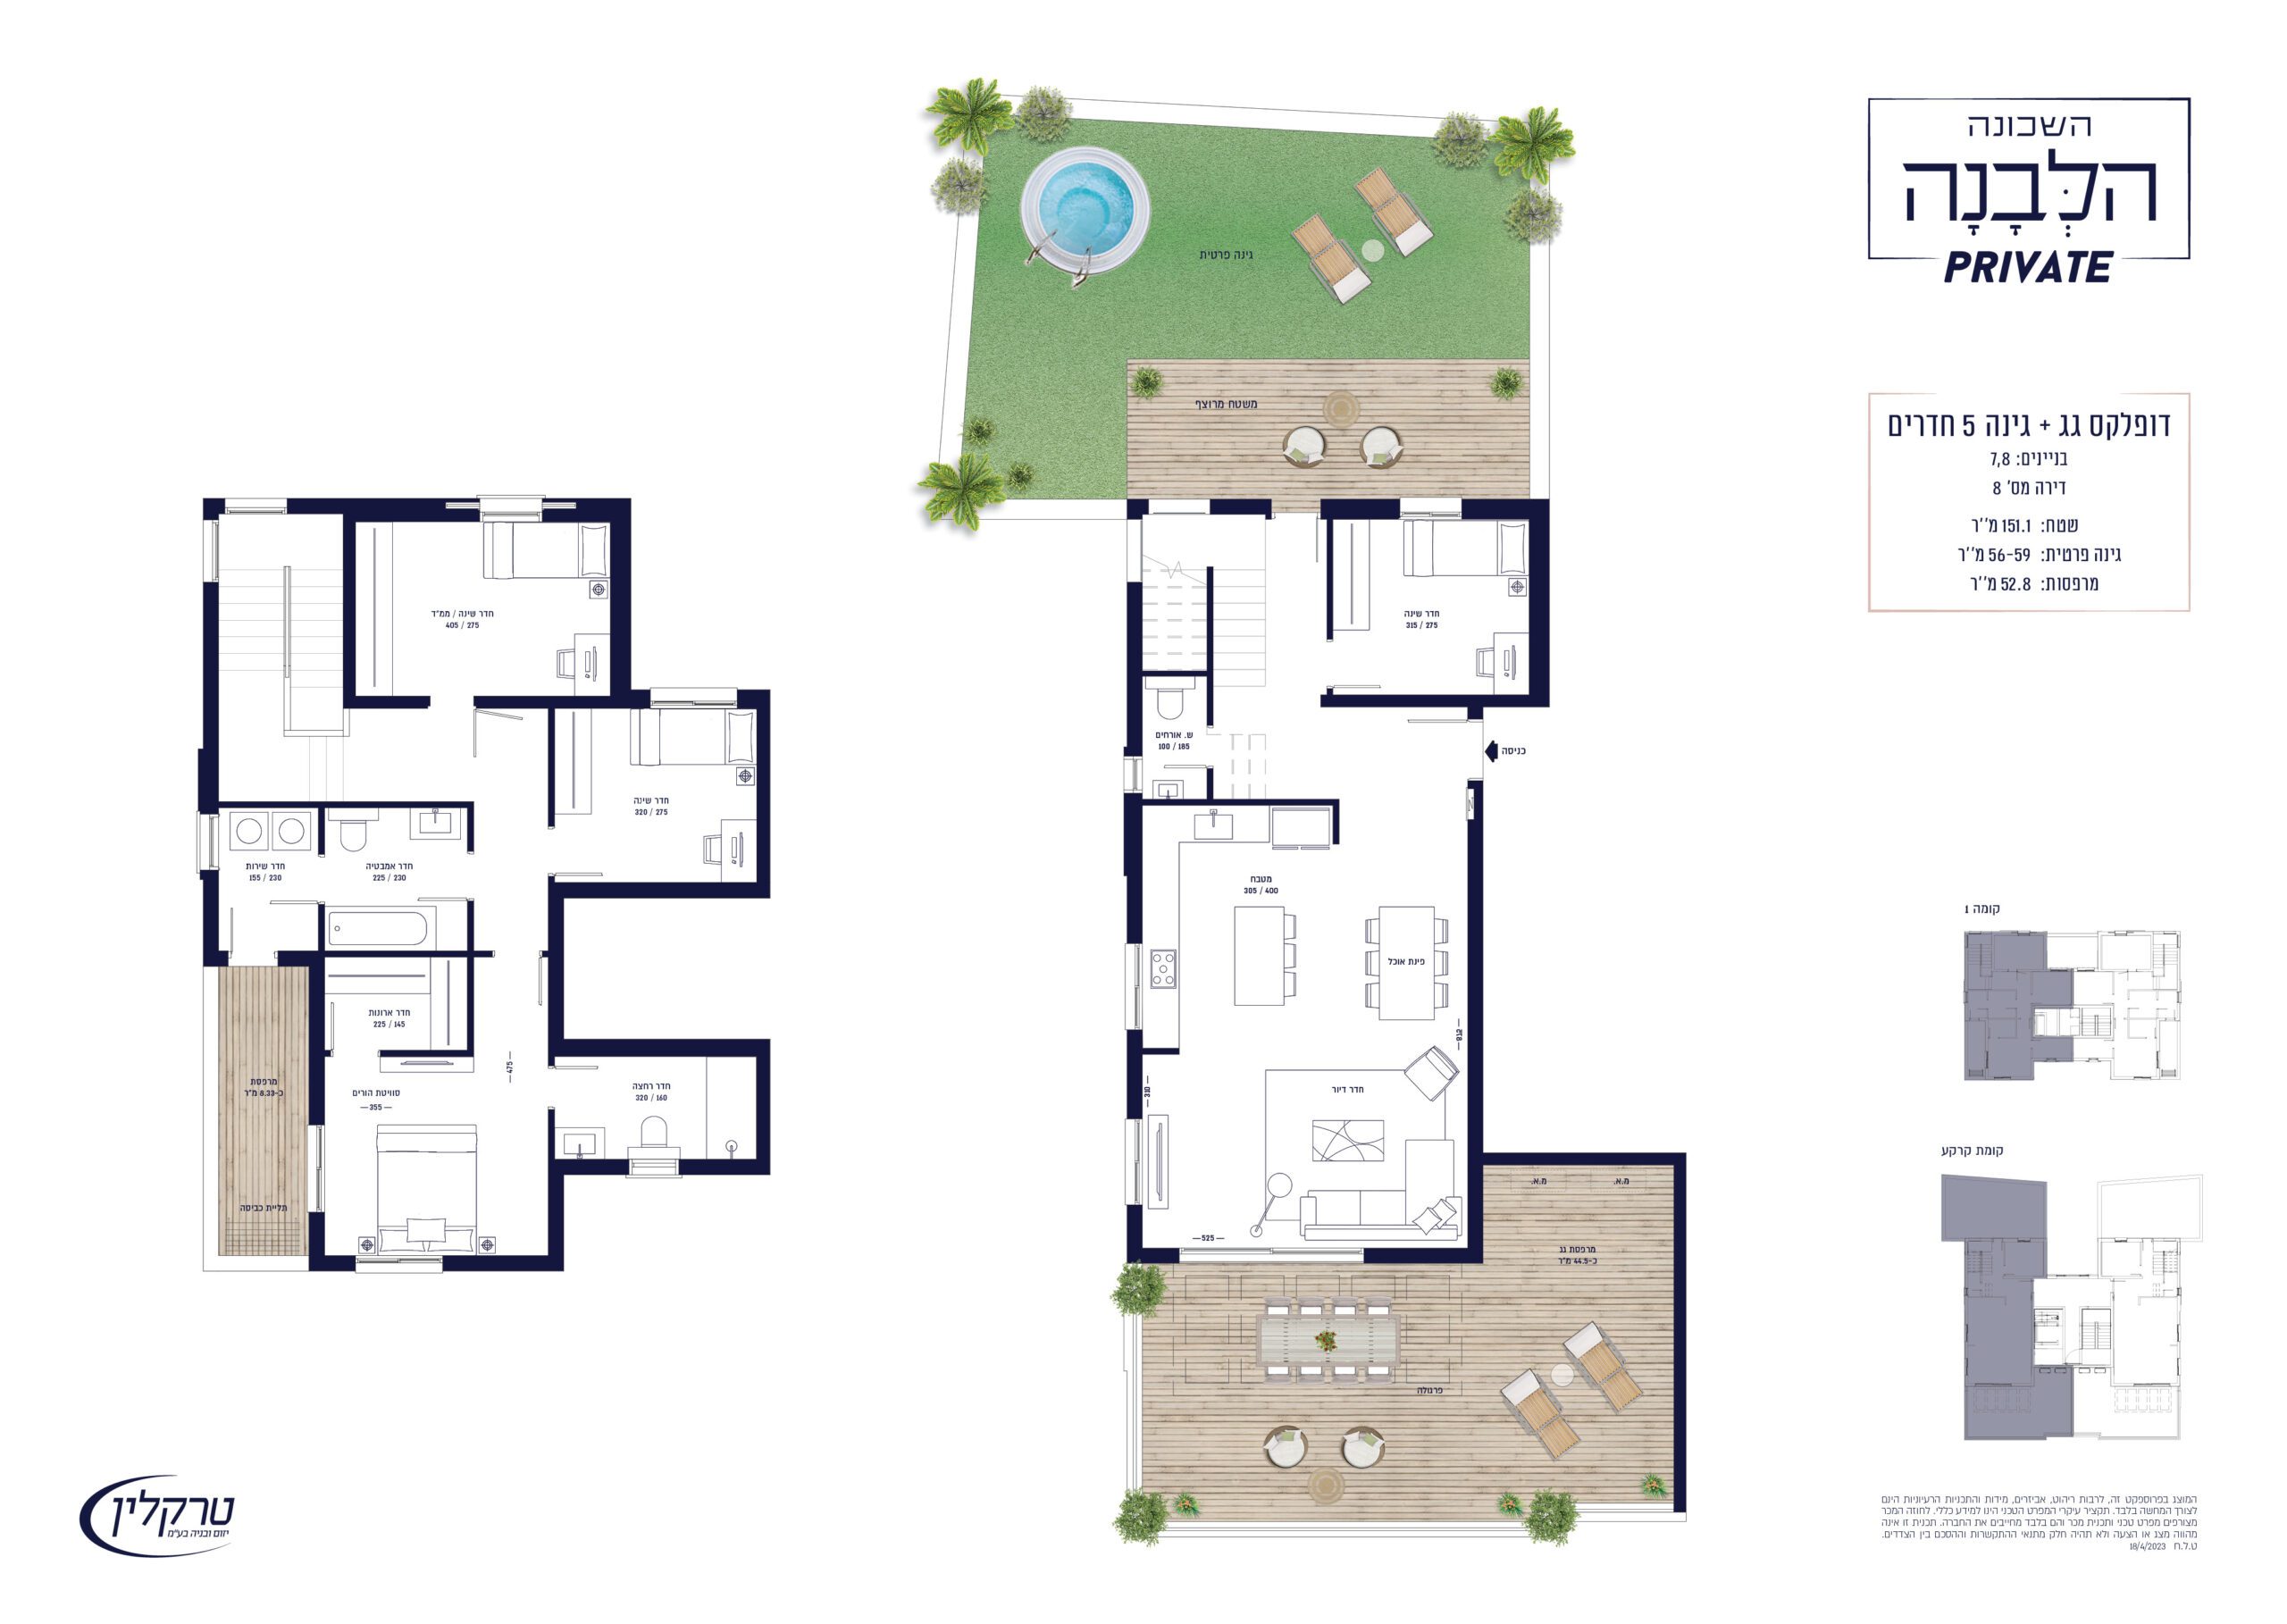 דופלקס גג + גינה 5 חדרים - בניינים 7,8 דירה מס' 8